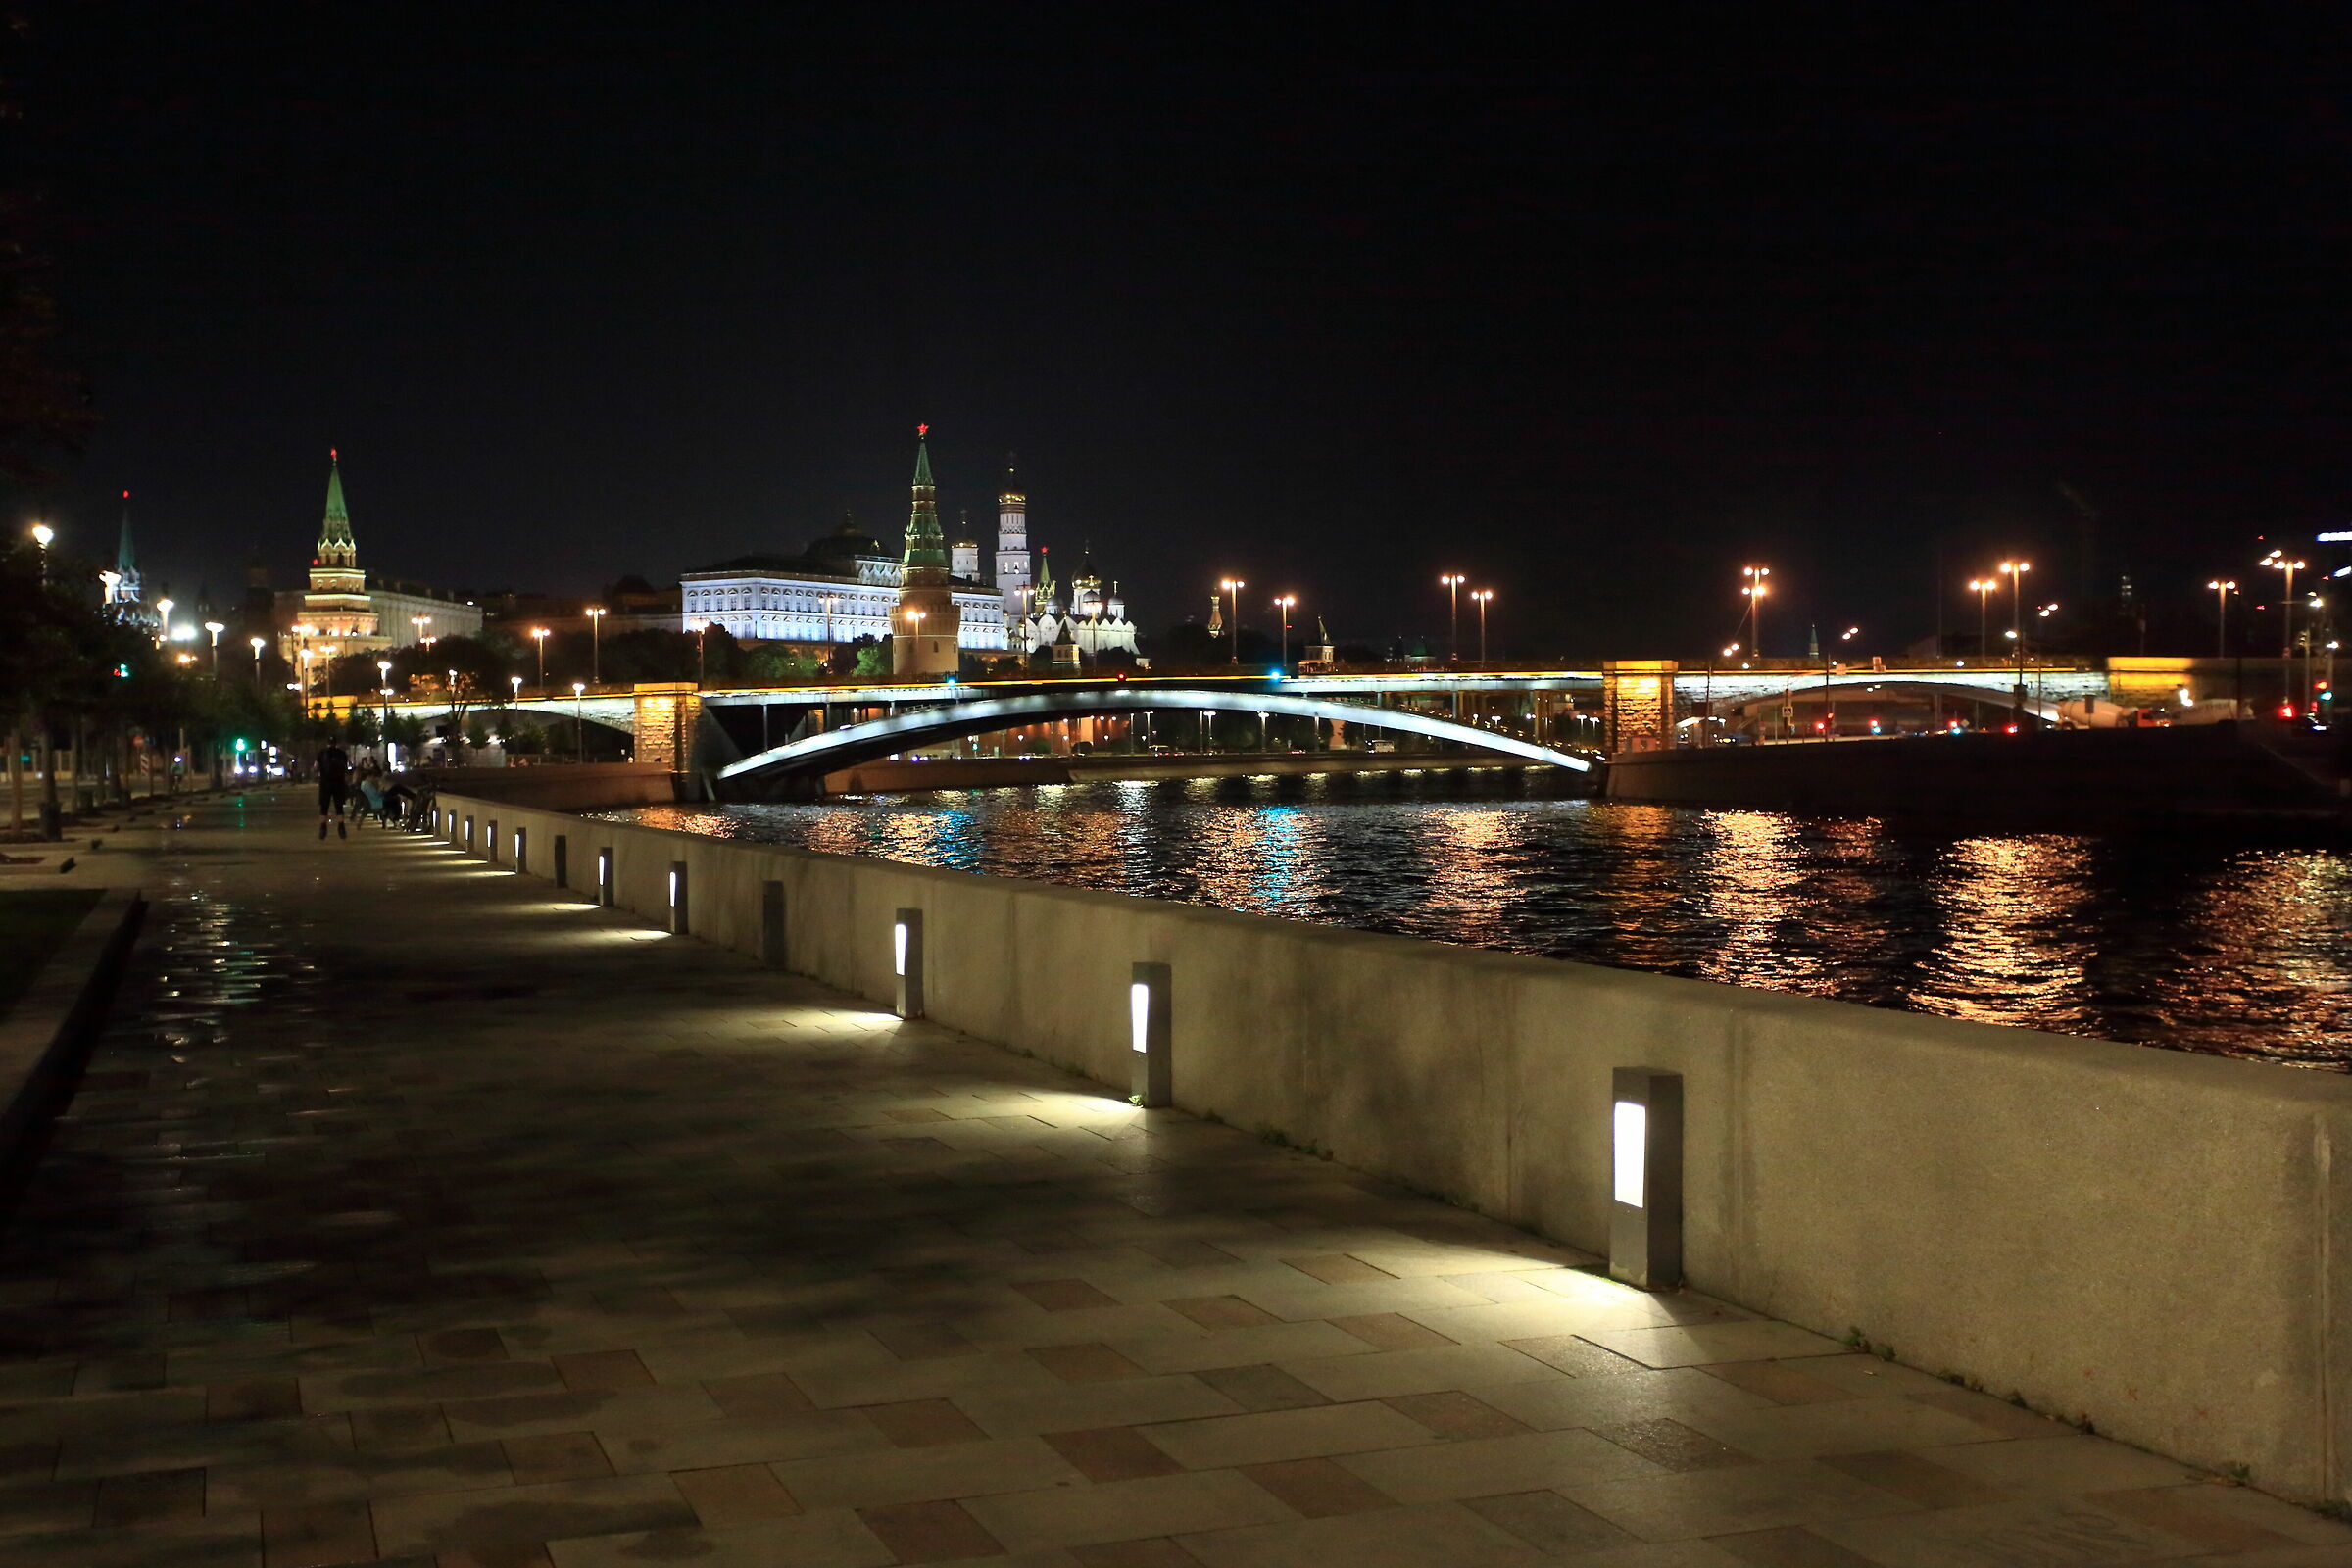 Mosca Notturno sul Moscova...